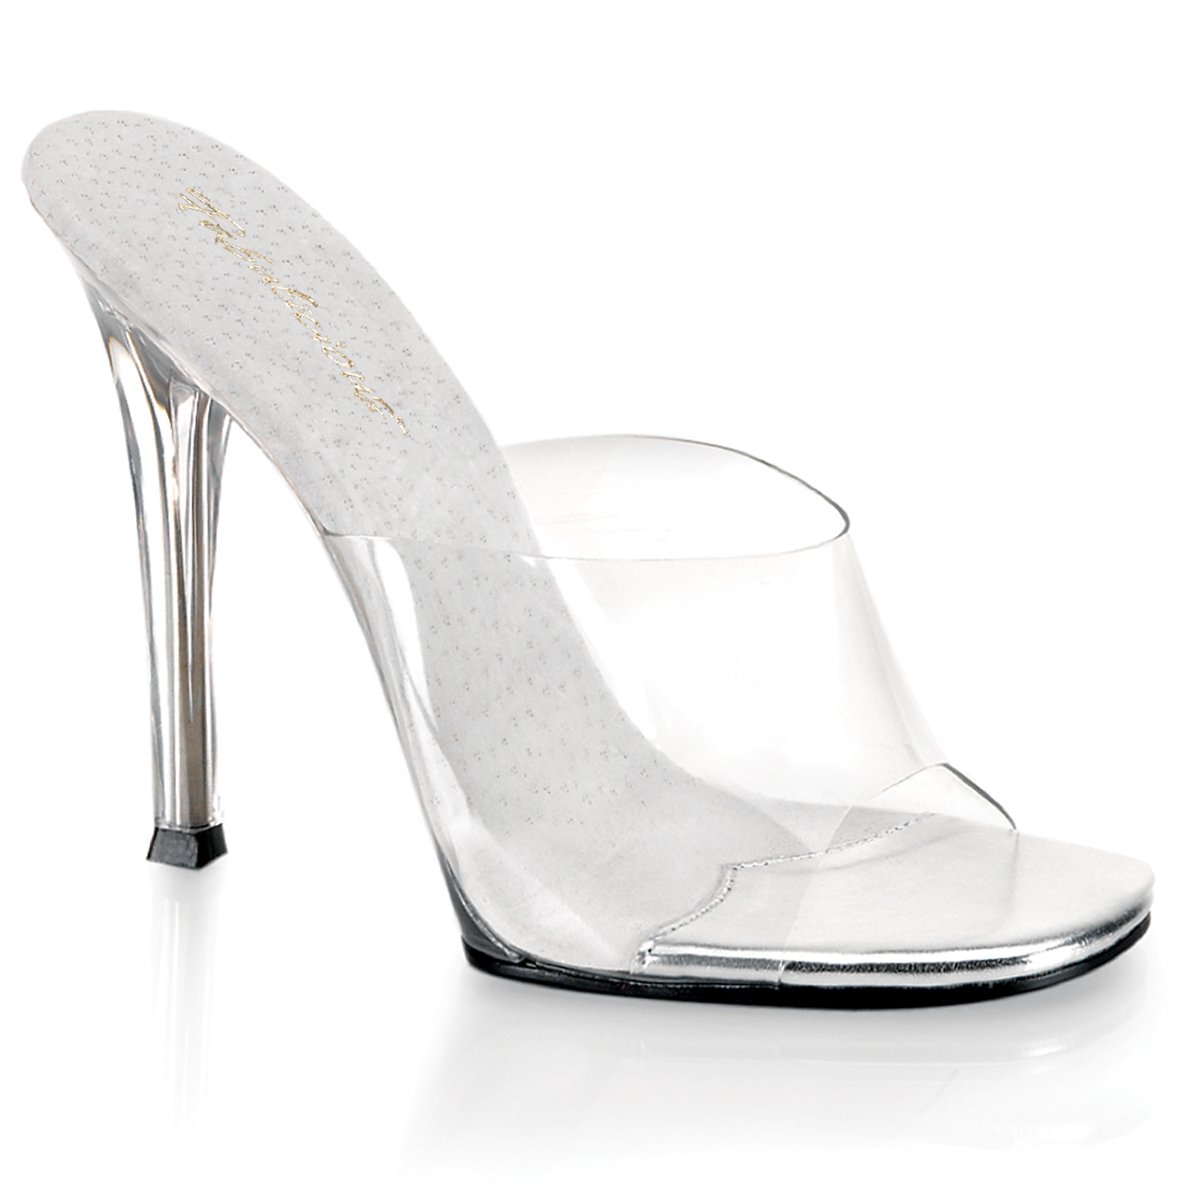 White Heels Png Aesthetic, Transparent Png , Transparent Png Image - PNGitem-hdcinema.vn